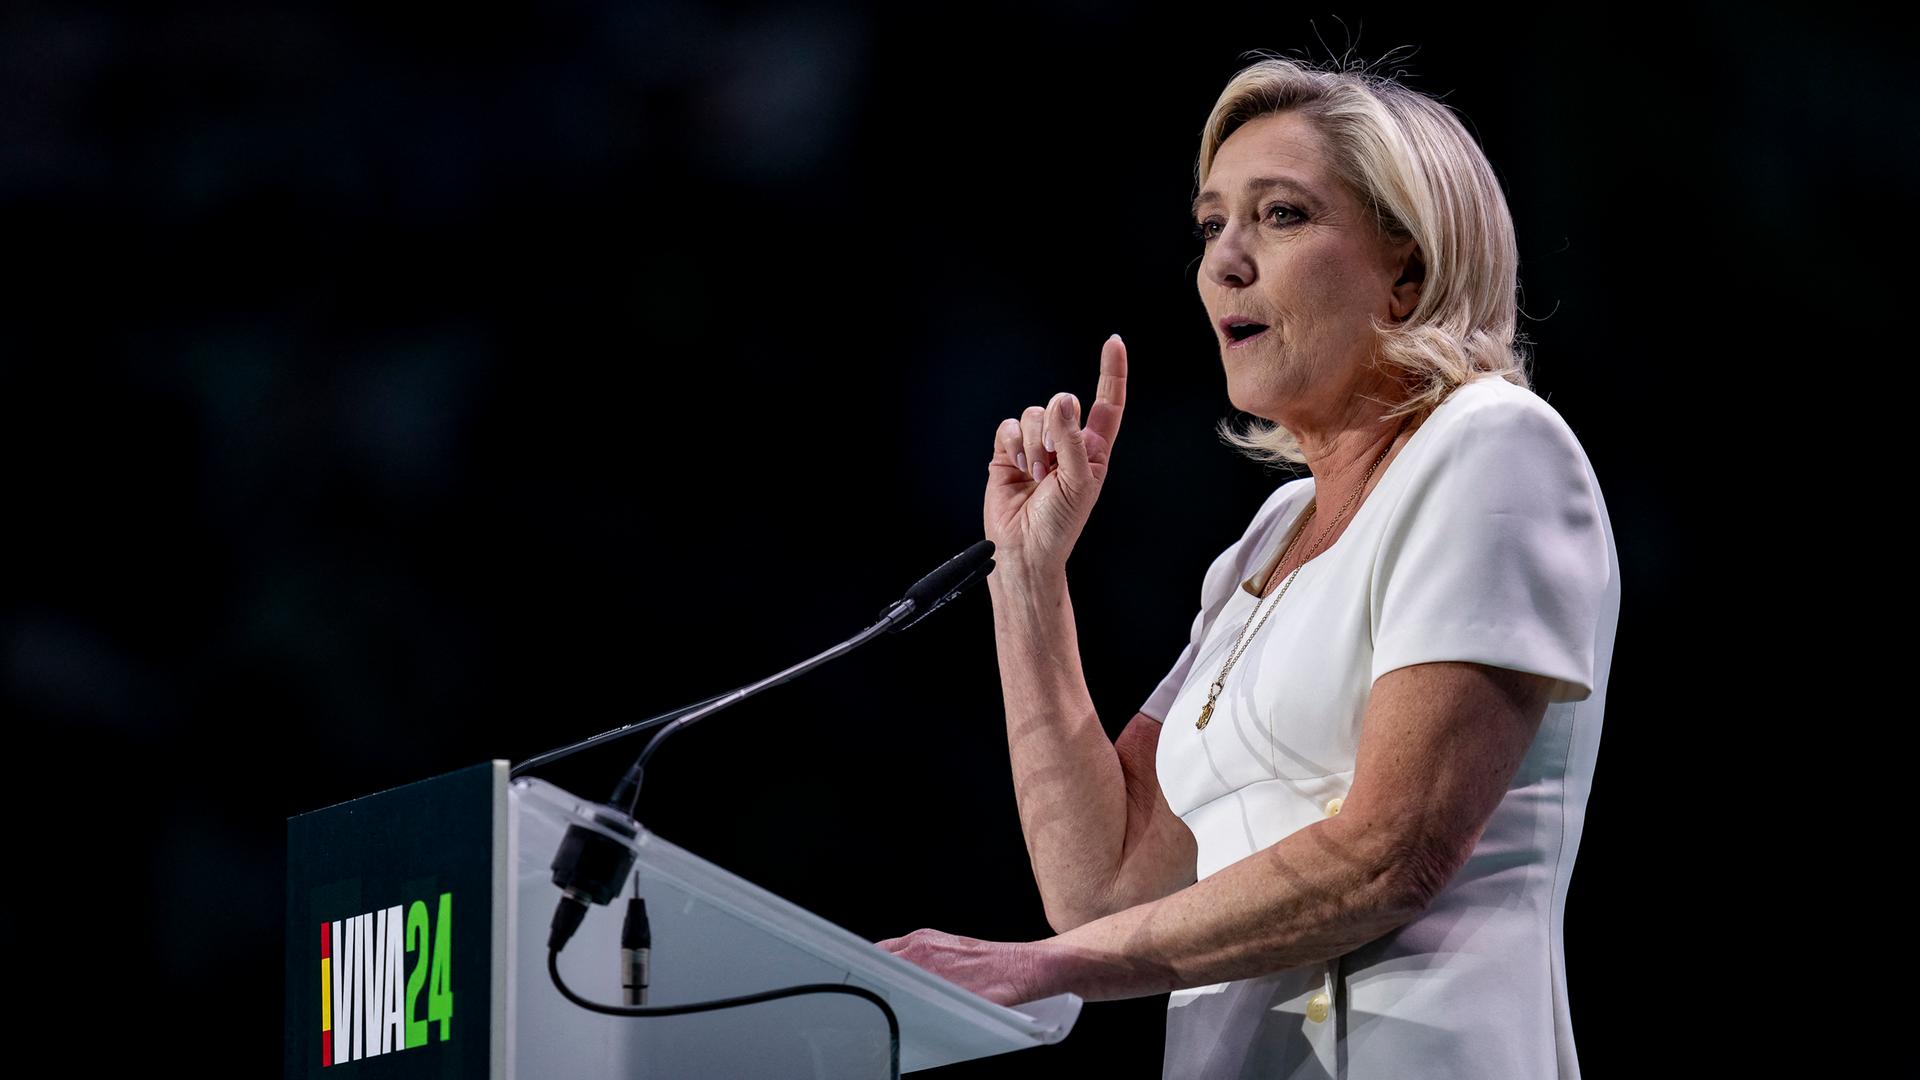 Le Pen im weißen Sommerkleid steht an einem Rednepult, spricht und hebt dabei den rechten Zeigefinger. Der Hintergrund ist dunkel.